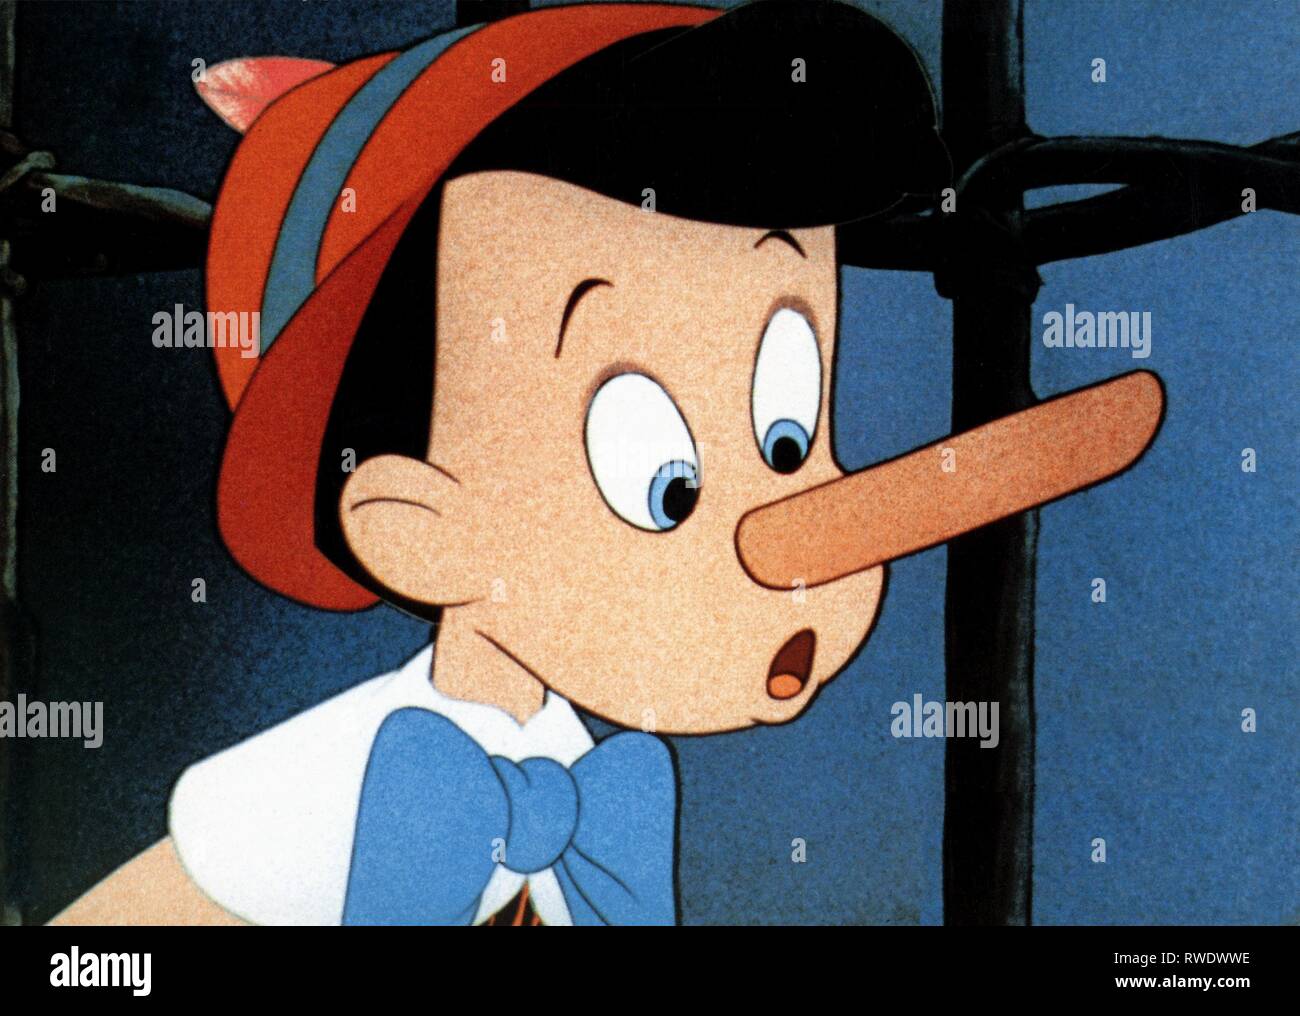 Pinocchio nose immagini e fotografie stock ad alta risoluzione - Alamy